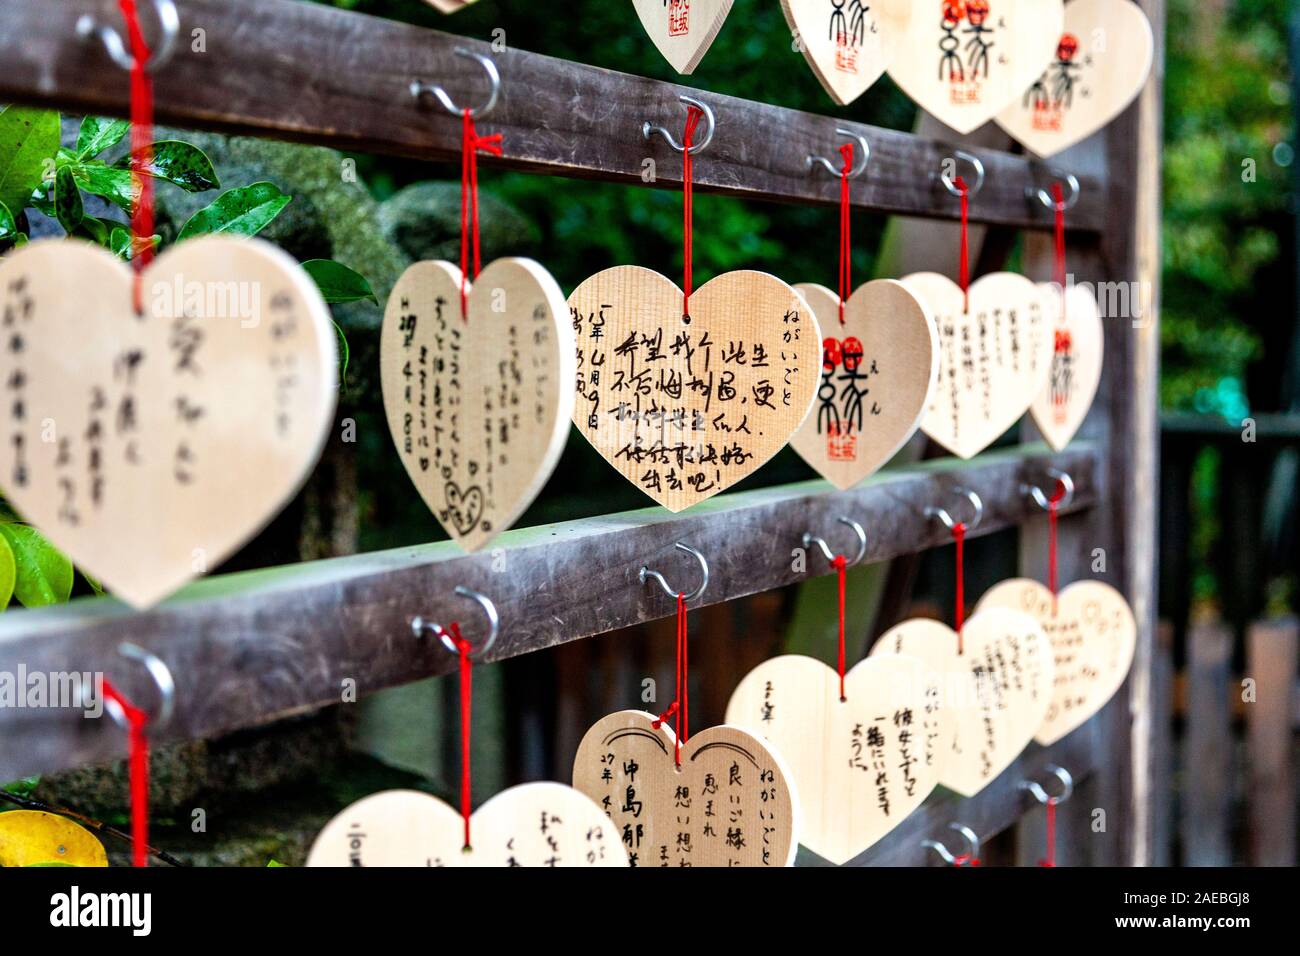 Ema en forma de corazón de madera, placas con oraciones y deseos para el templo espíritus, Yasaka, Kyoto, Kansai, Japón Foto de stock